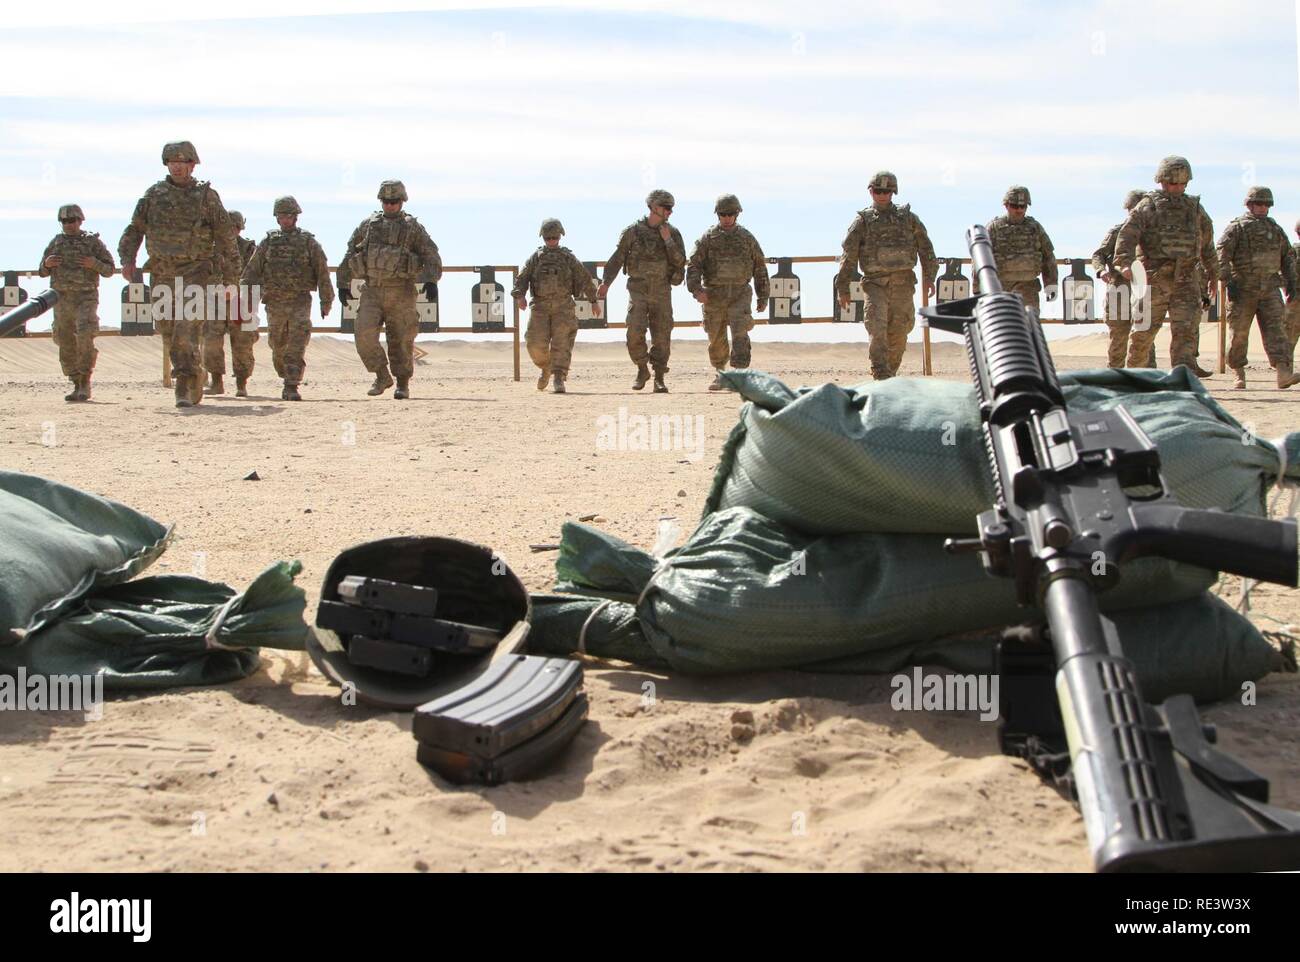 Réserve de l'armée de soldats de la 451e Commandement de soutien expéditionnaire retourner à leurs positions de tir après avoir vérifié leur tourné sur le groupe cible, à l'éventail de qualifications d'armes au Koweït, 8 novembre 2016. Banque D'Images